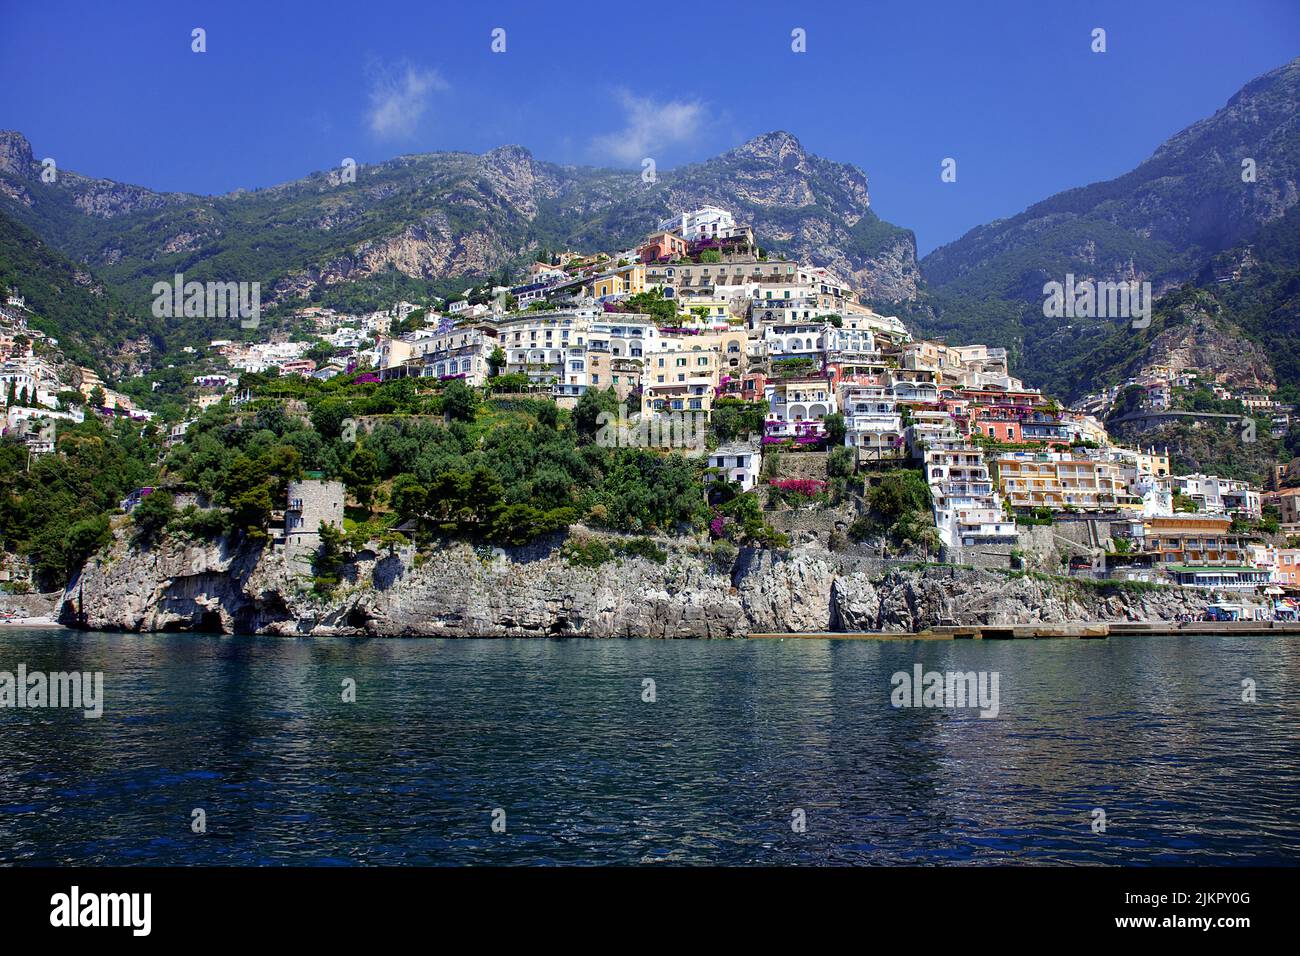 Il villaggio di pescatori di Positano sulla costiera amalfitana, patrimonio dell'umanità dell'UNESCO, Campania, Italia, Mediterraneo, Europa Foto Stock